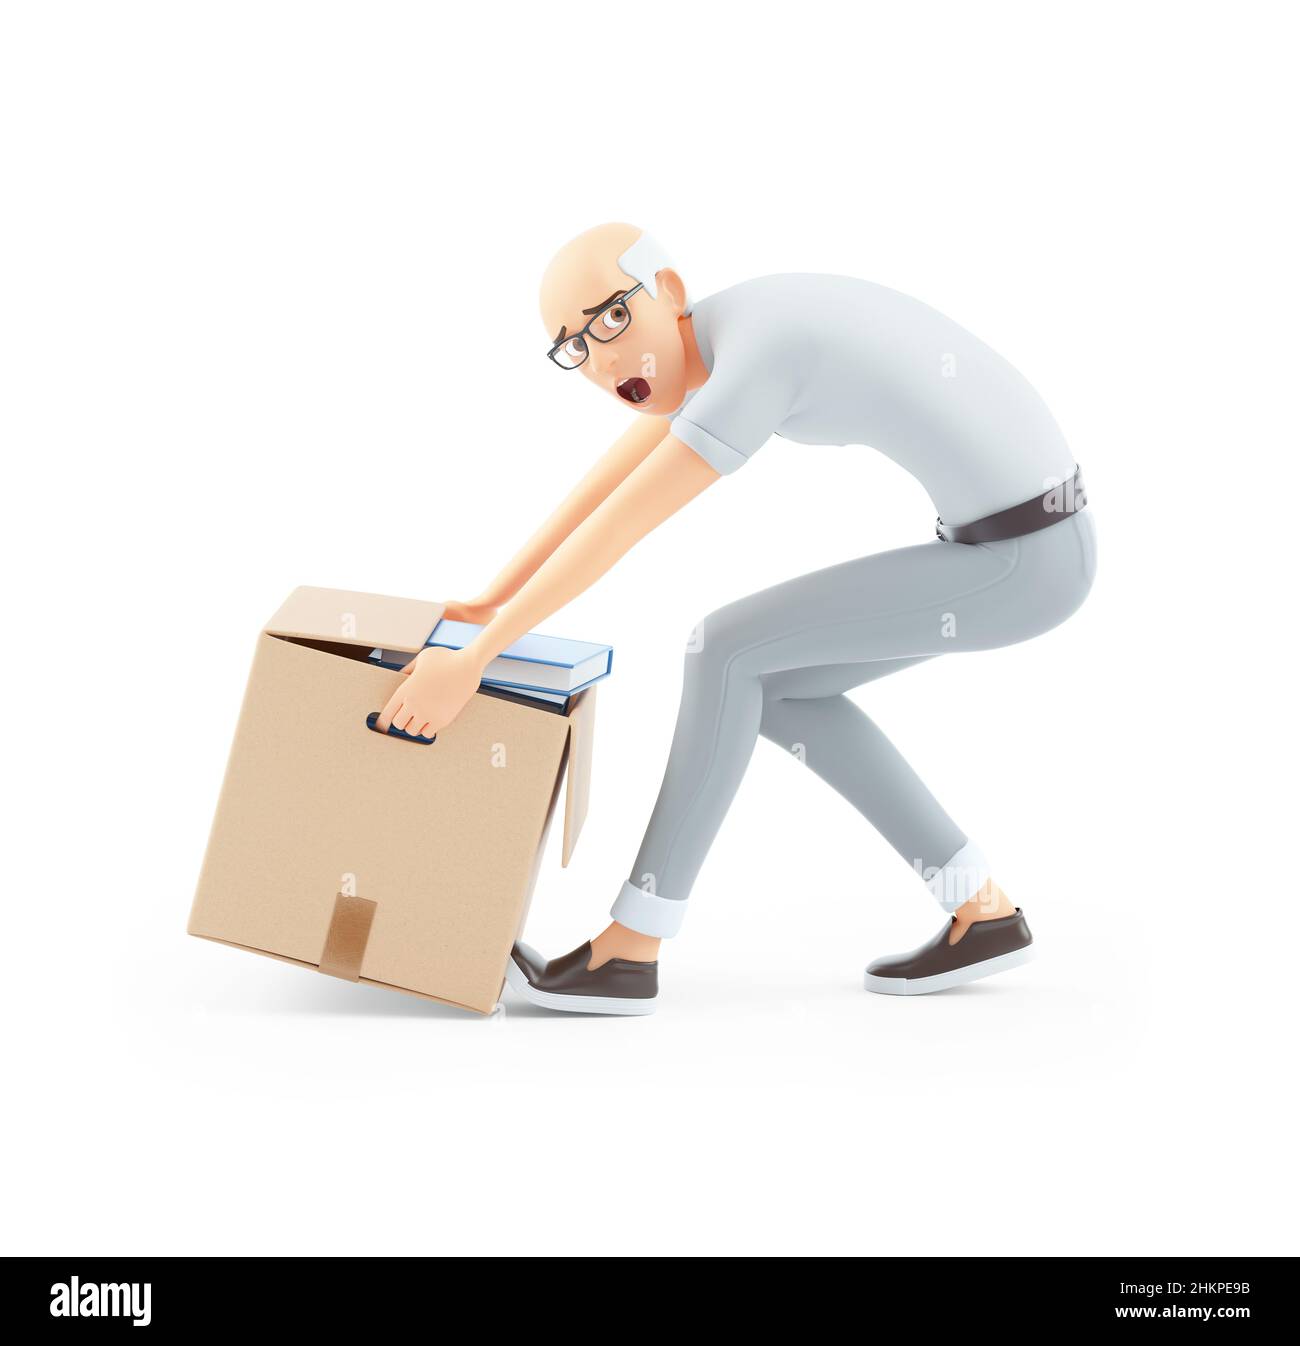 3d senior man lifting heavy box, illustration isolated on white background Stock Photo